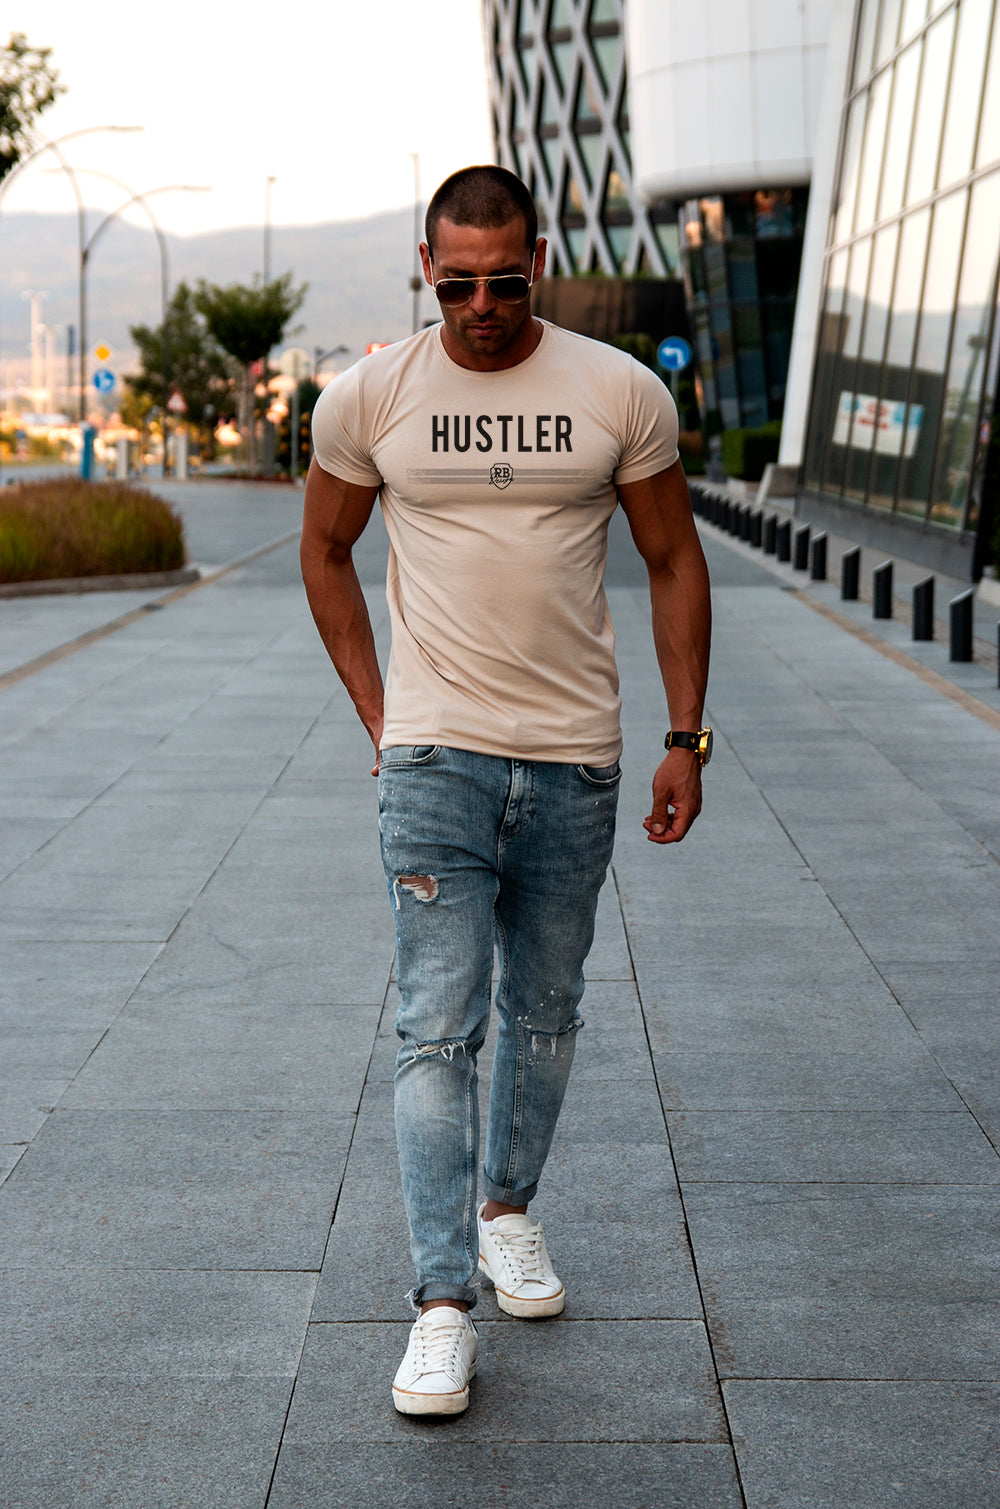 Men's T-shirt HUSTLER MD975